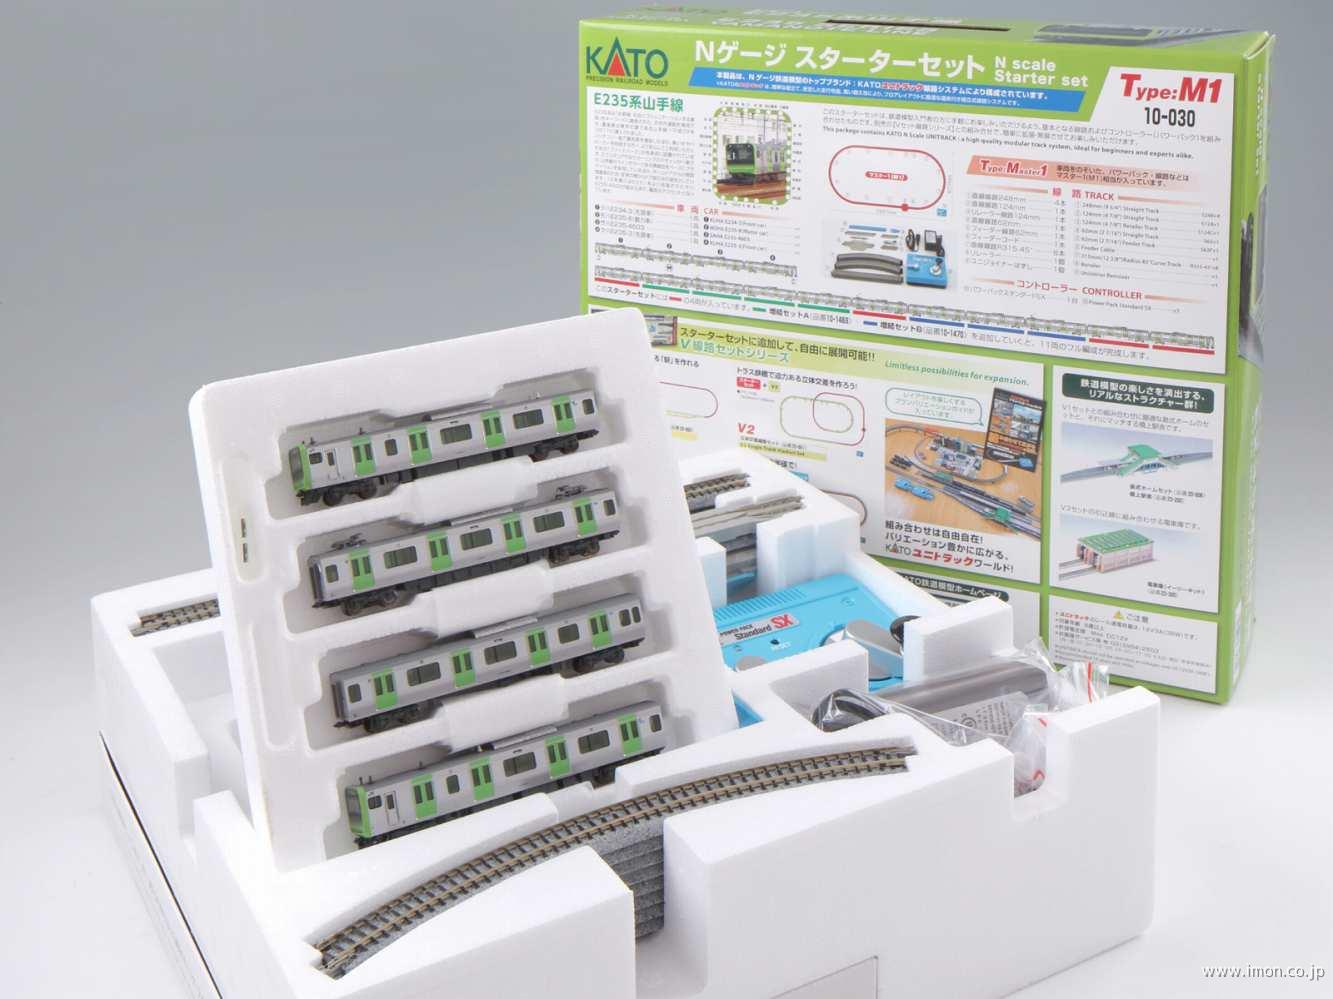 日本の楽天や代理店で買 10-030 KATO Nゲージ 山手線 スターターセット ゲーム、おもちゃ | reallifecamsex.lol